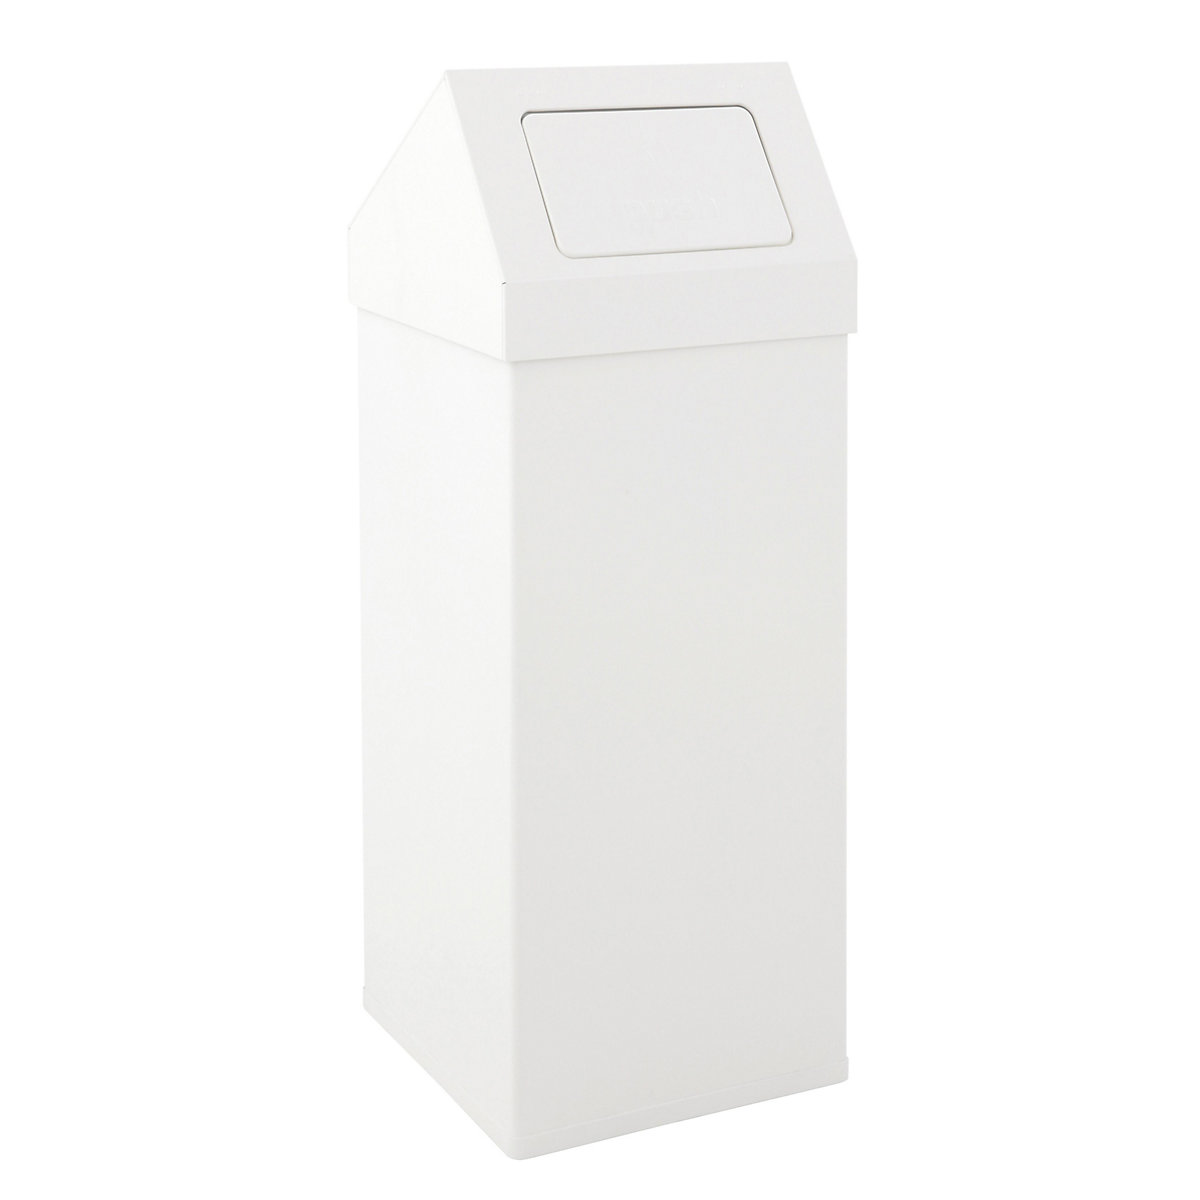 Abfallbehälter mit Push-Deckel, Volumen 110 l, BxHxT 390 x 1000 x 390 mm, weiß